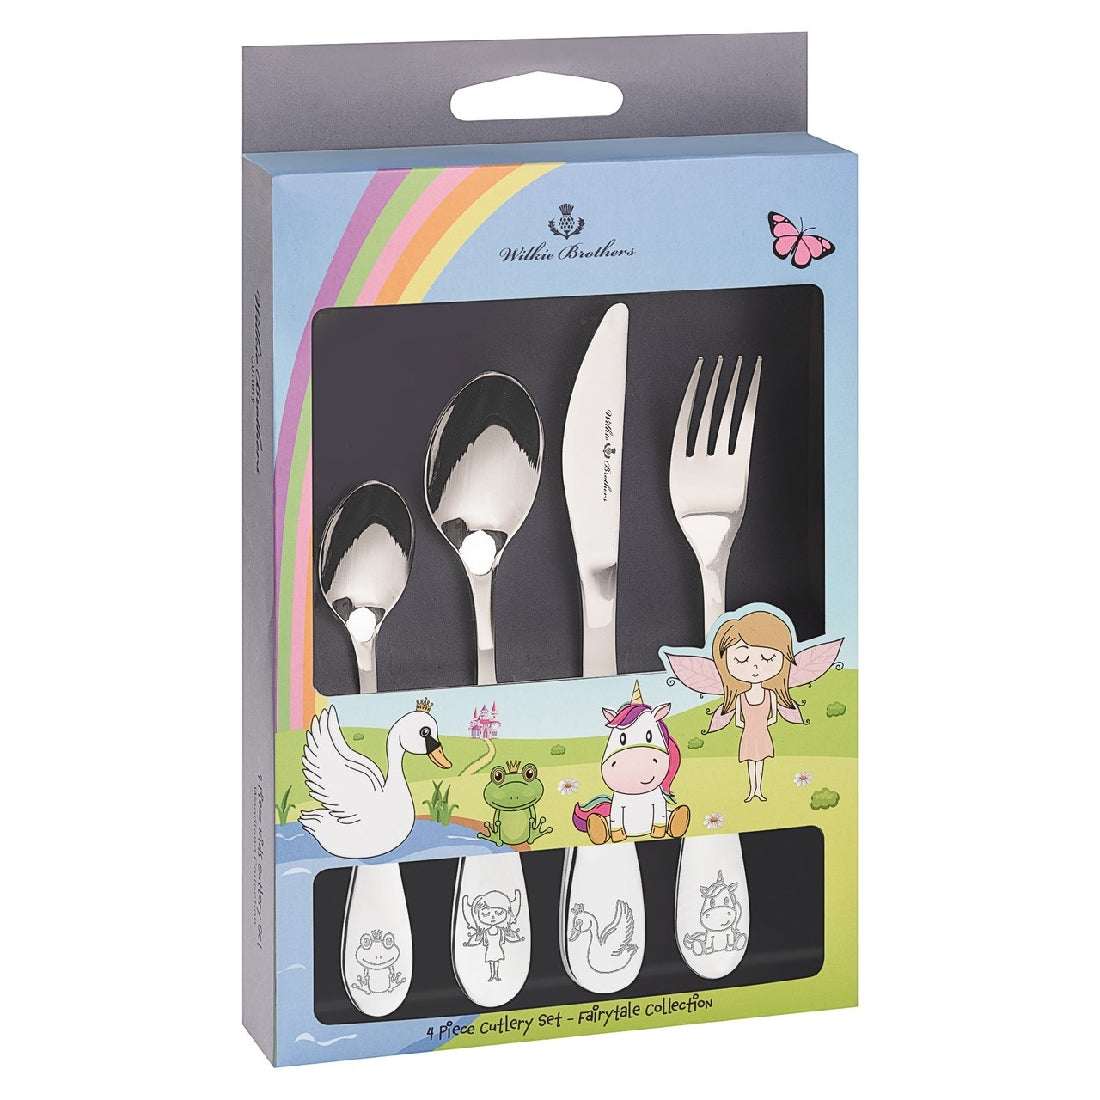 Wilkie Brothers 4 Piece Children's Cutlery Set - Fairytale